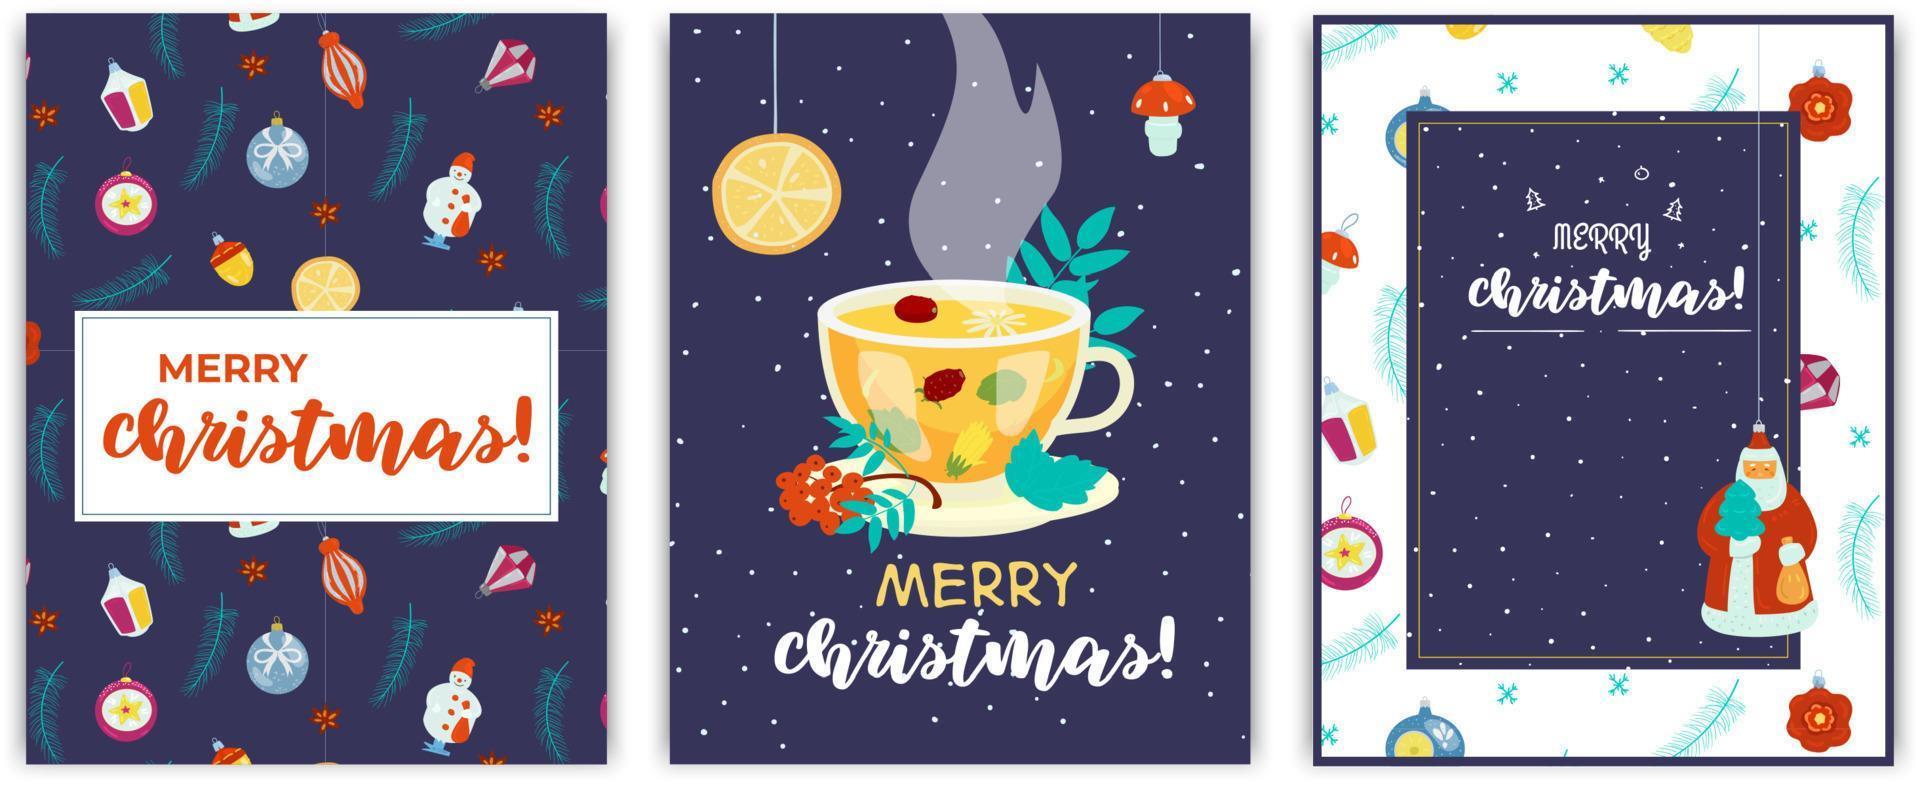 ensemble vectoriel de cartes postales de noël avec des jouets rétro, des branches de sapin et une tasse de thé sur fond bleu foncé.